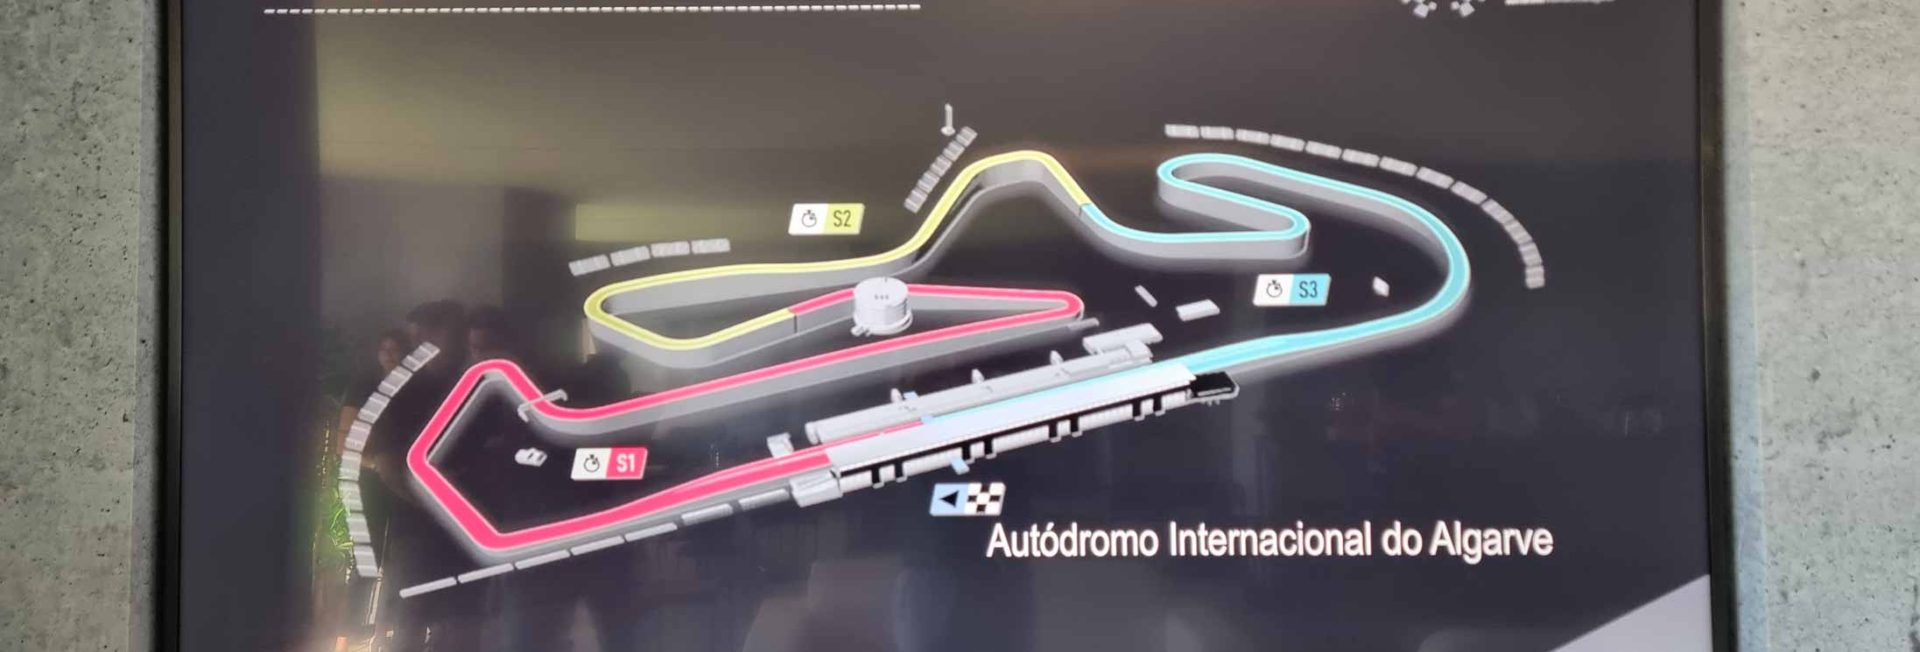 drive in motion Portugal Autodromo do Algarve